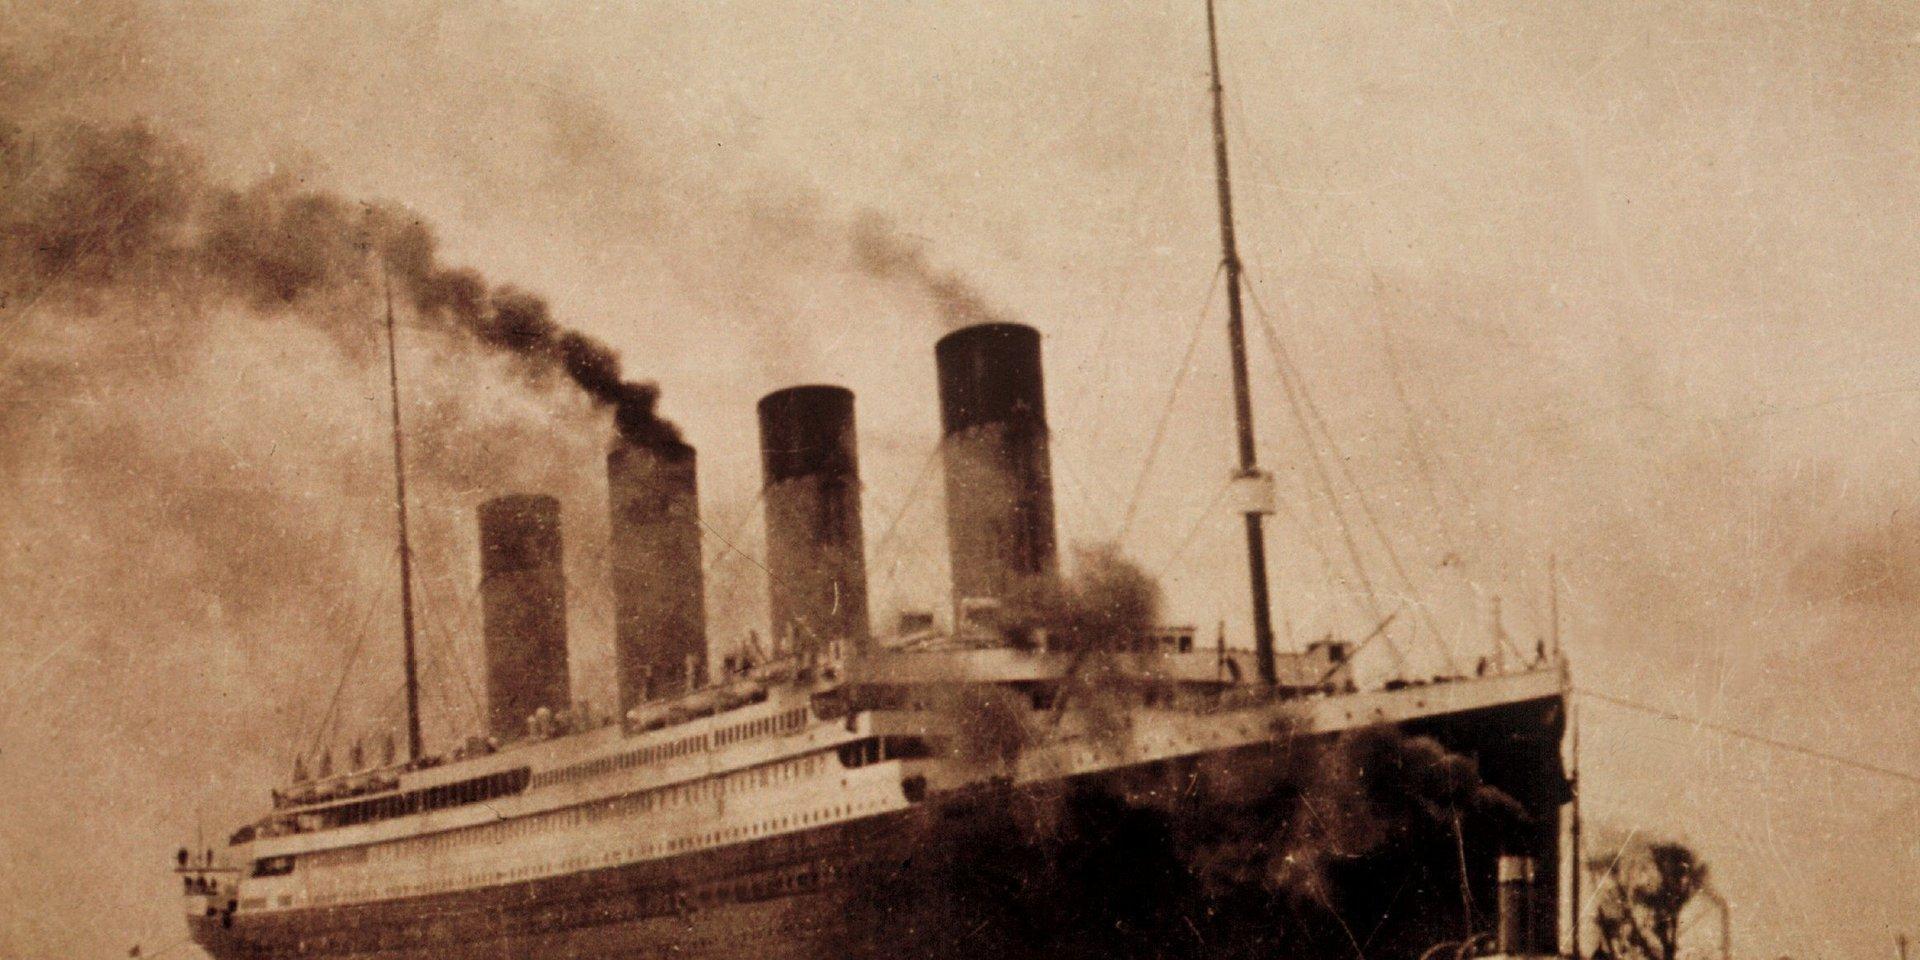 Titanic sjönk 1912. Nu kan även Harland and Wolff, som byggde fartyget, gå under.